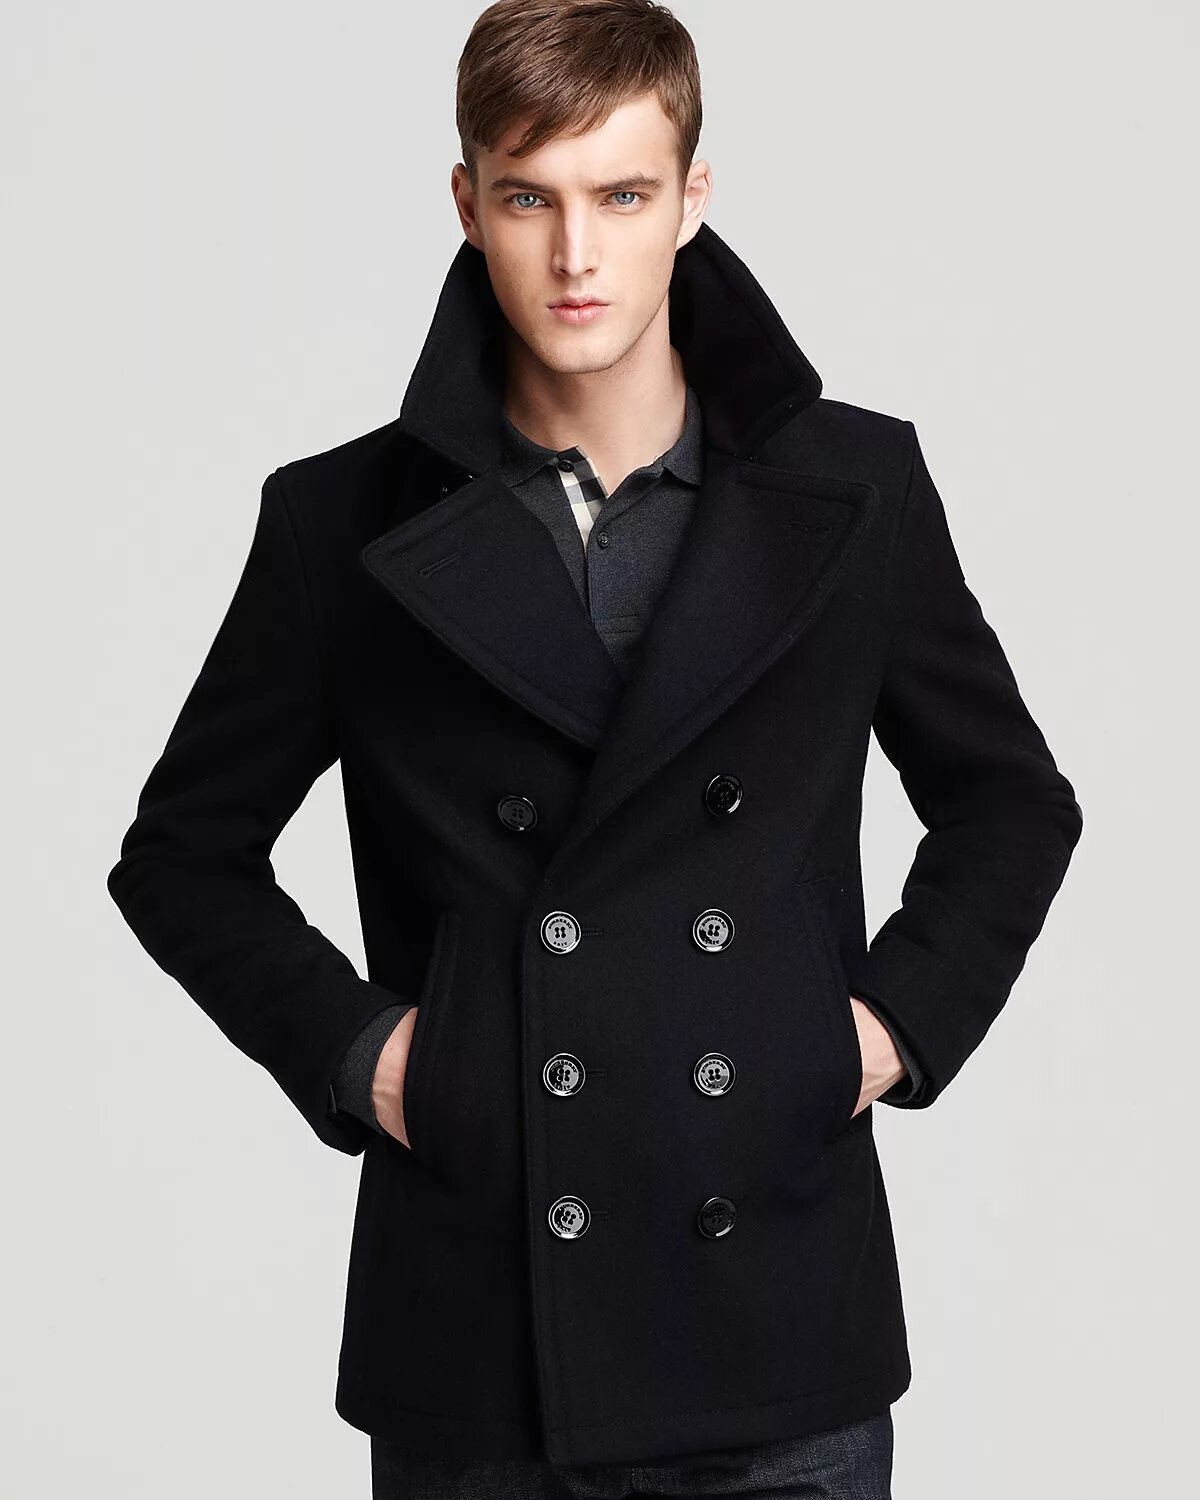 Мужское пальто ростов. Пальто Барбери черное мужское. Burberry Peacoat man. Burberry Brit Peacoat. Burberry Brit пальто мужское.